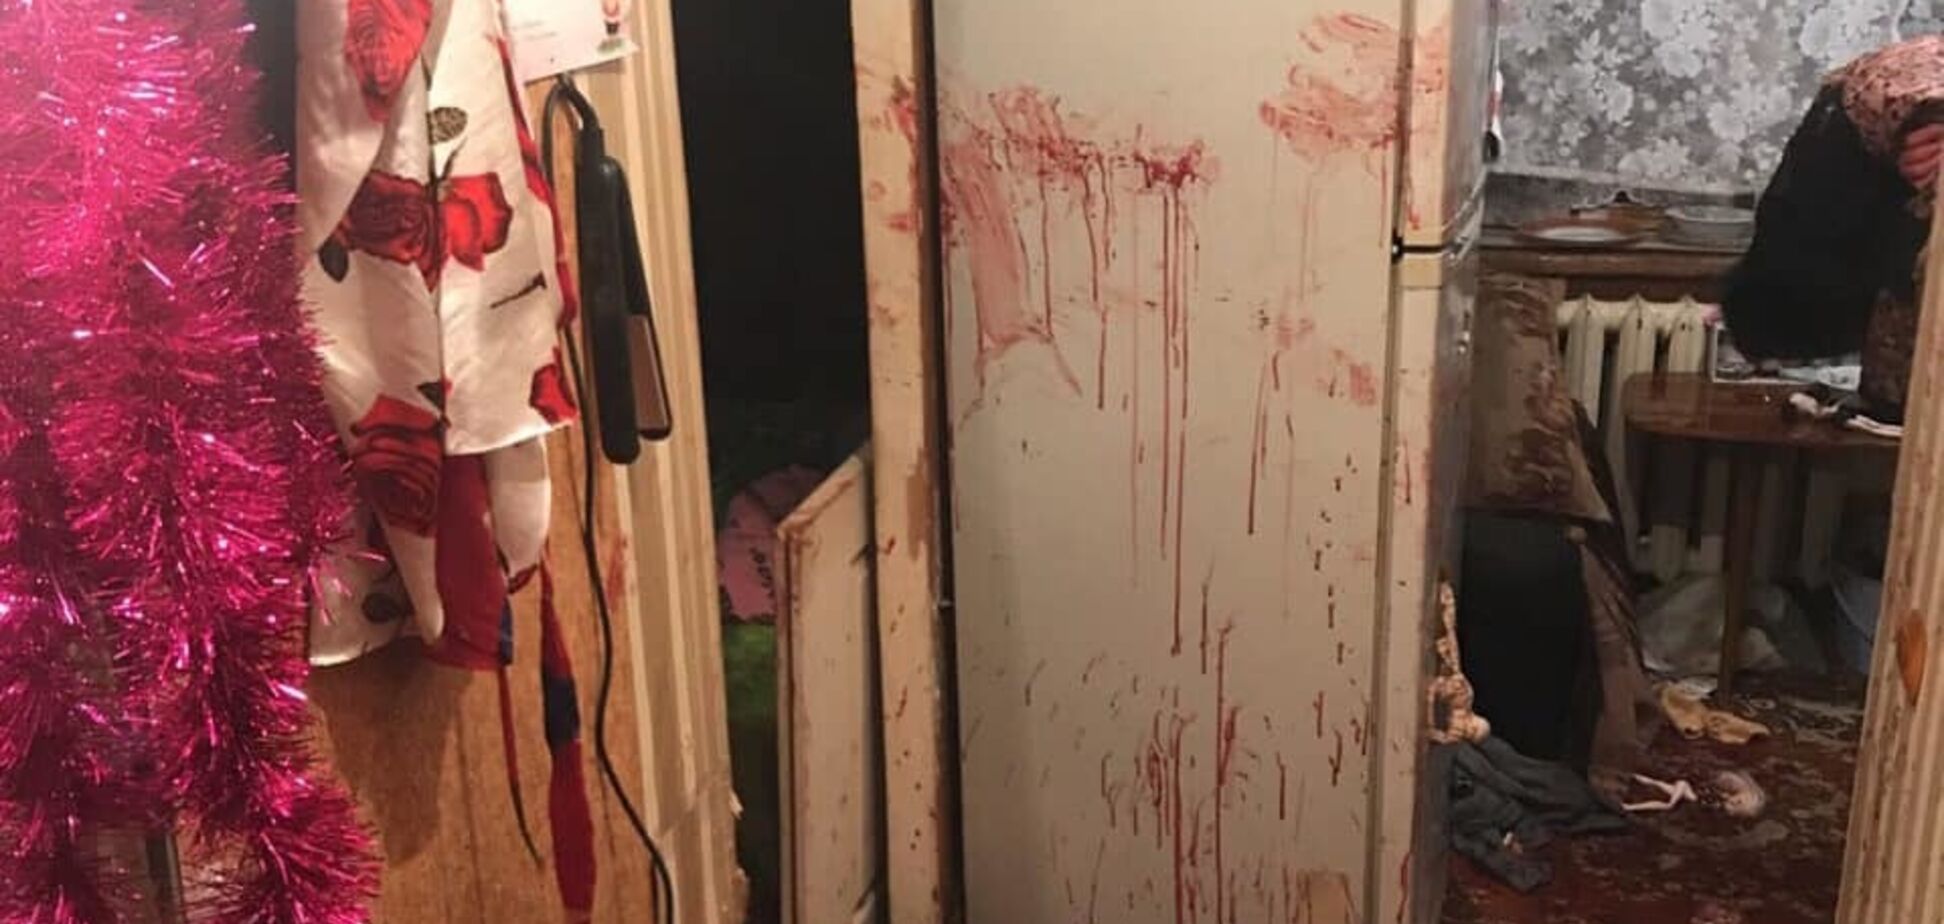 Квартира залита кров'ю: у Києві неадекват влаштував розправу над дочкою і дружиною